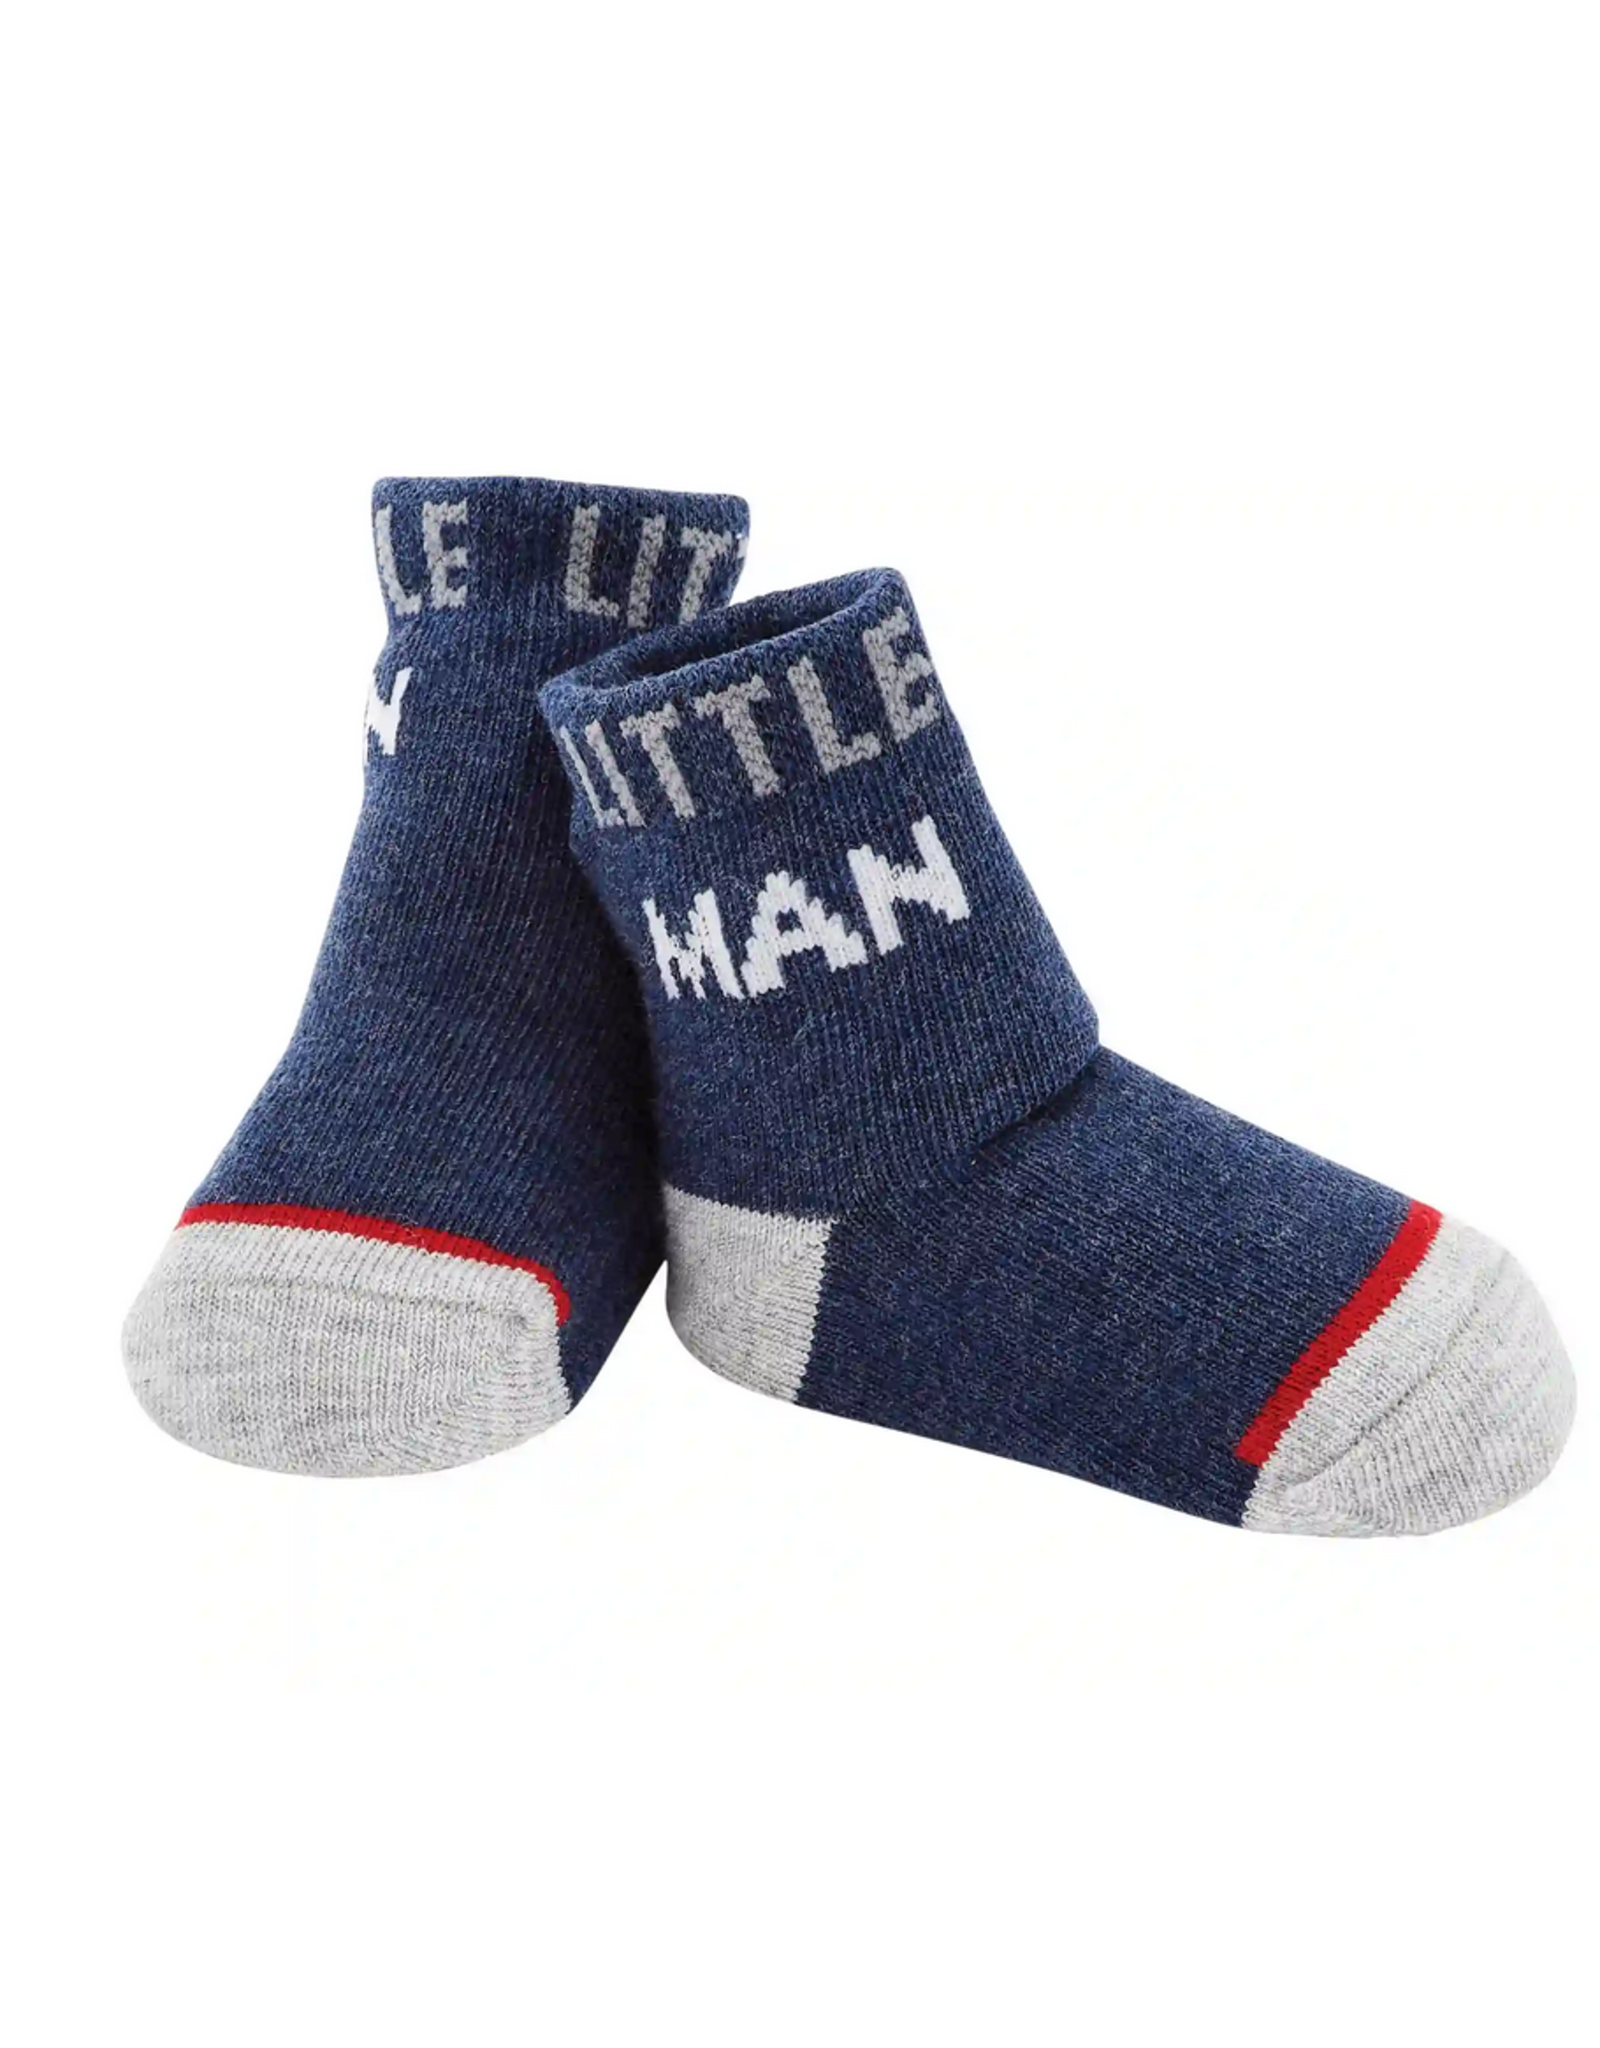 Mudpie Little Man Socks